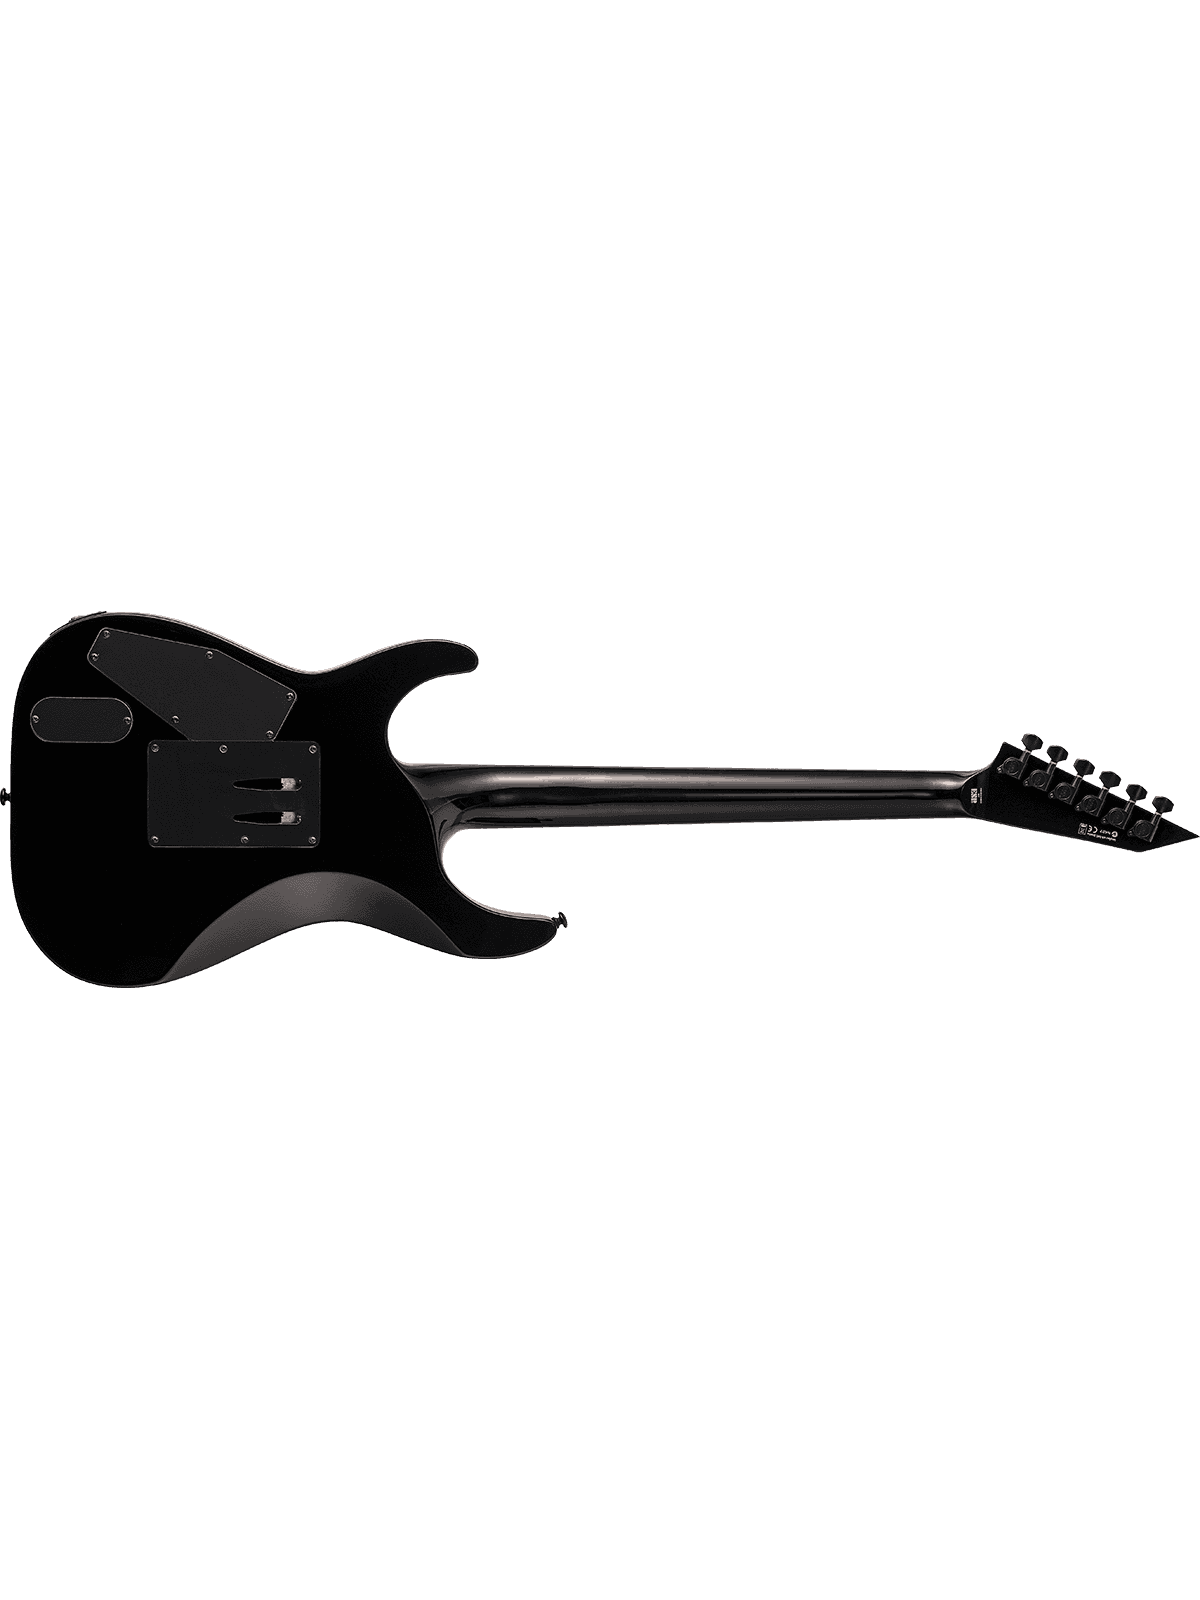 LTD - KH-602 Kirk Hammet Noir